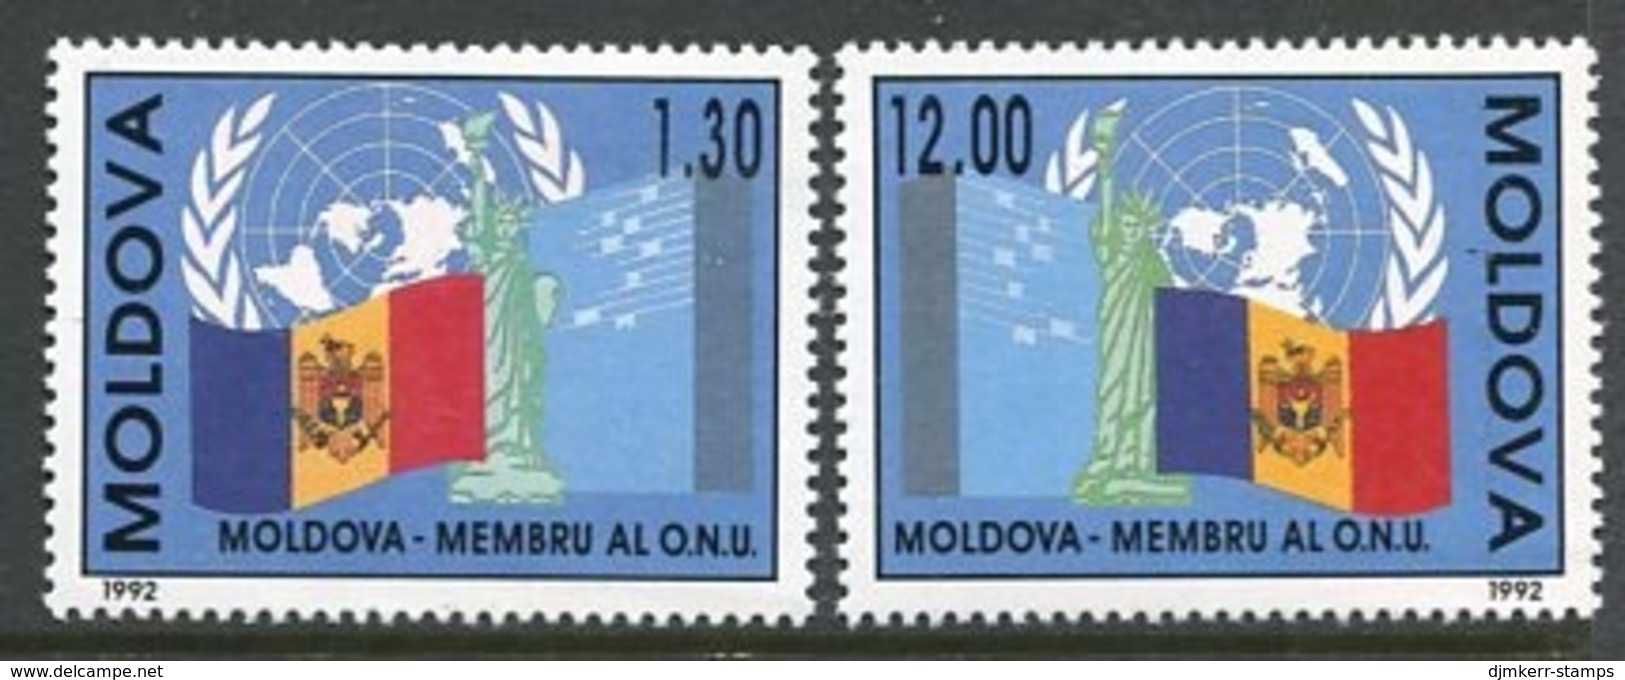 MOLDOVA 1992 Entry Into UNO MNH / **.  Michel 39-40 - Moldawien (Moldau)